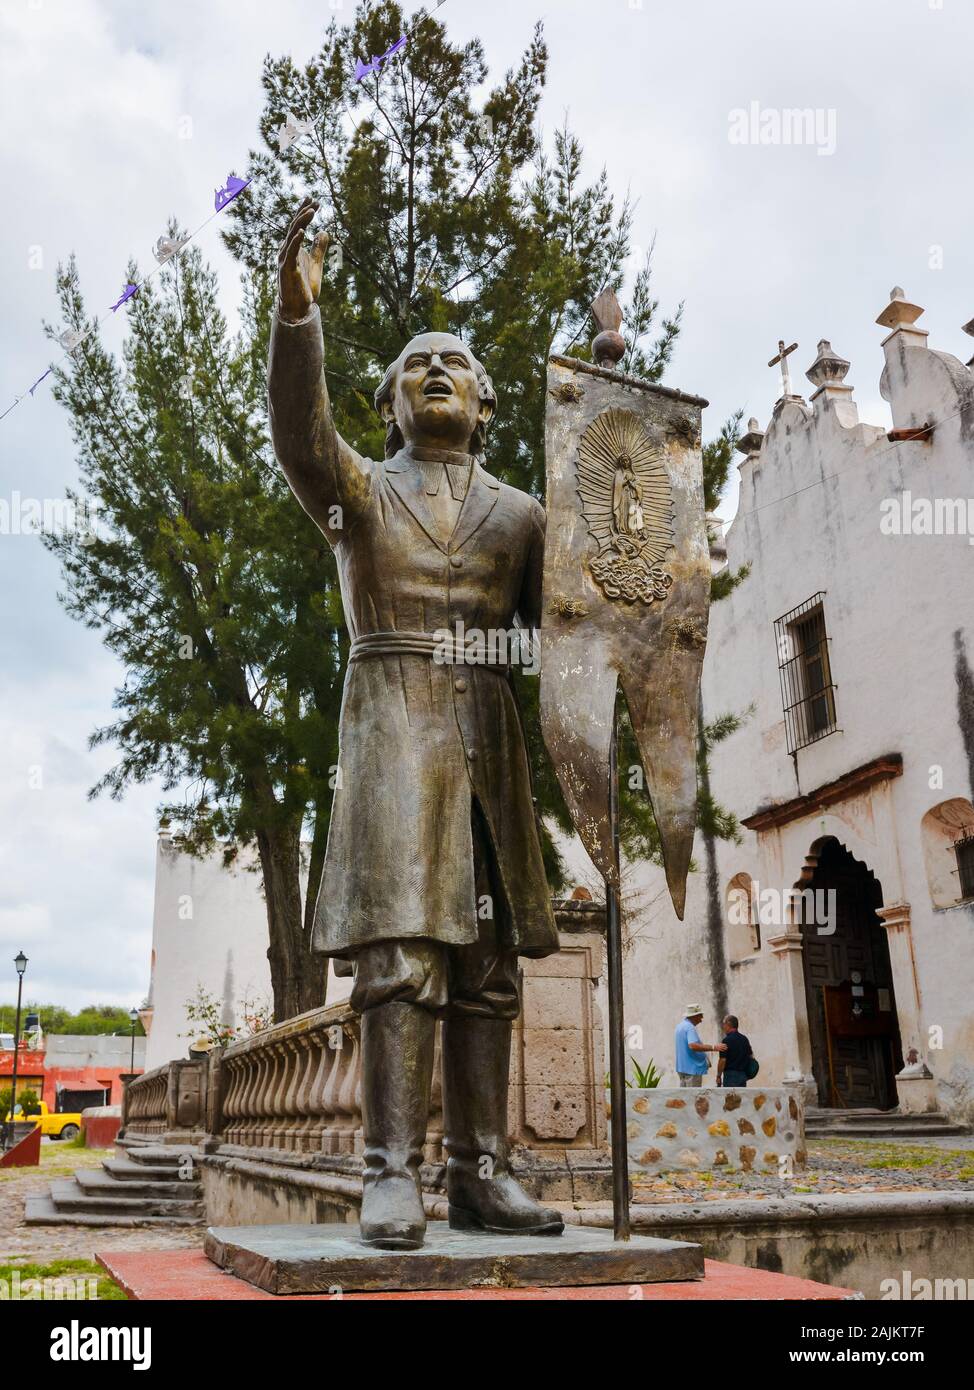 La estatua de Don Miguel Hidalgo y Costilla, un sacerdote católico mexicano y líder de la guerra de la Independencia de México. Foto de stock